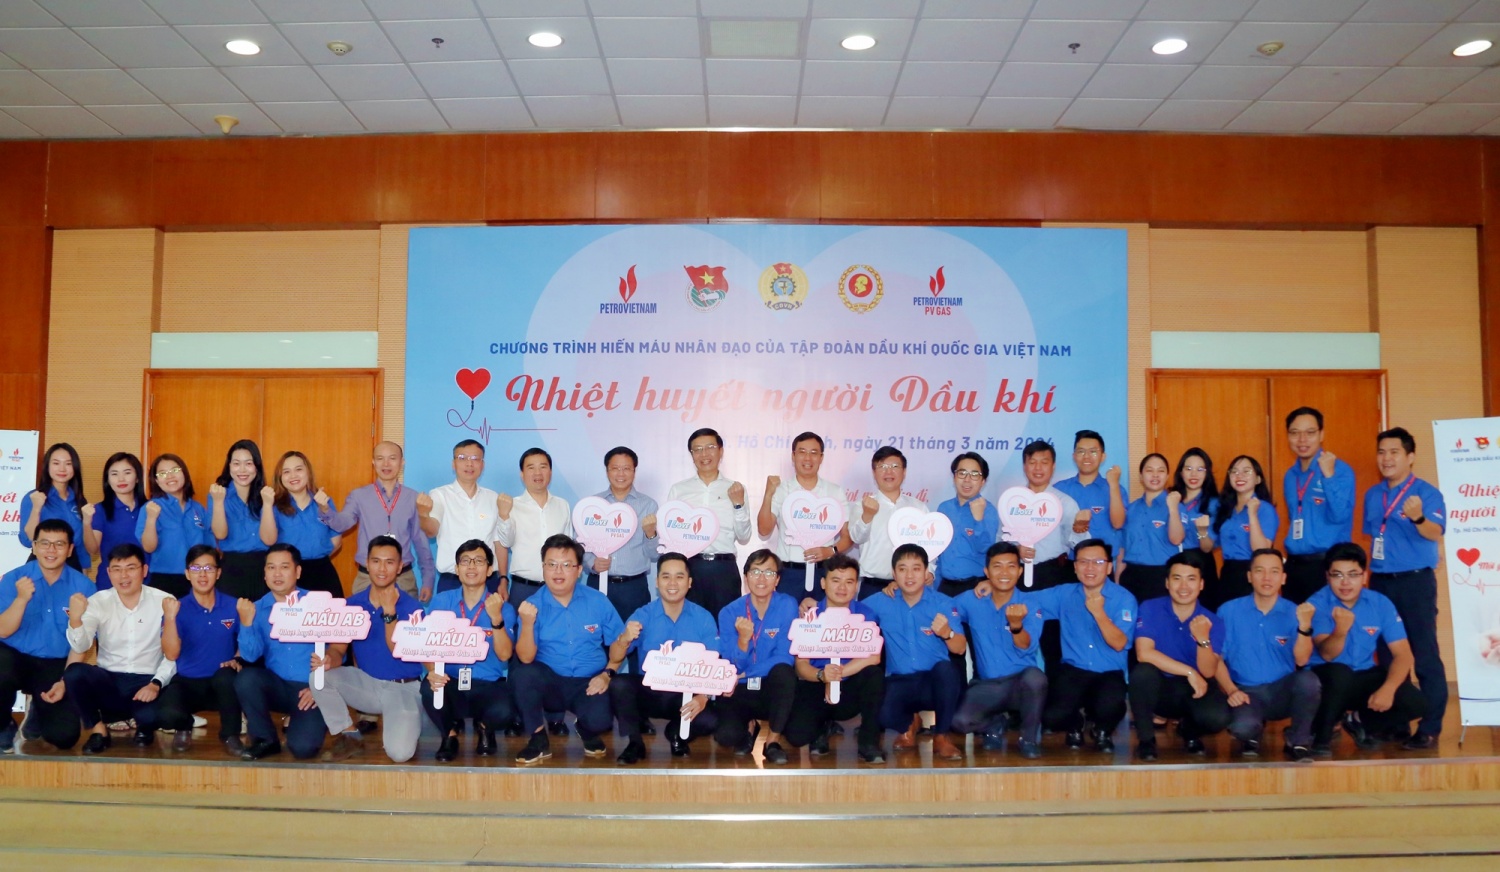 Các đại biểu tham gia lễ phát động chương trình hiến máu nhân đạo của Tập đoàn Dầu khí Quốc gia Việt Nam năm 2024 với chủ đề “Nhiệt huyết người Dầu khí”.